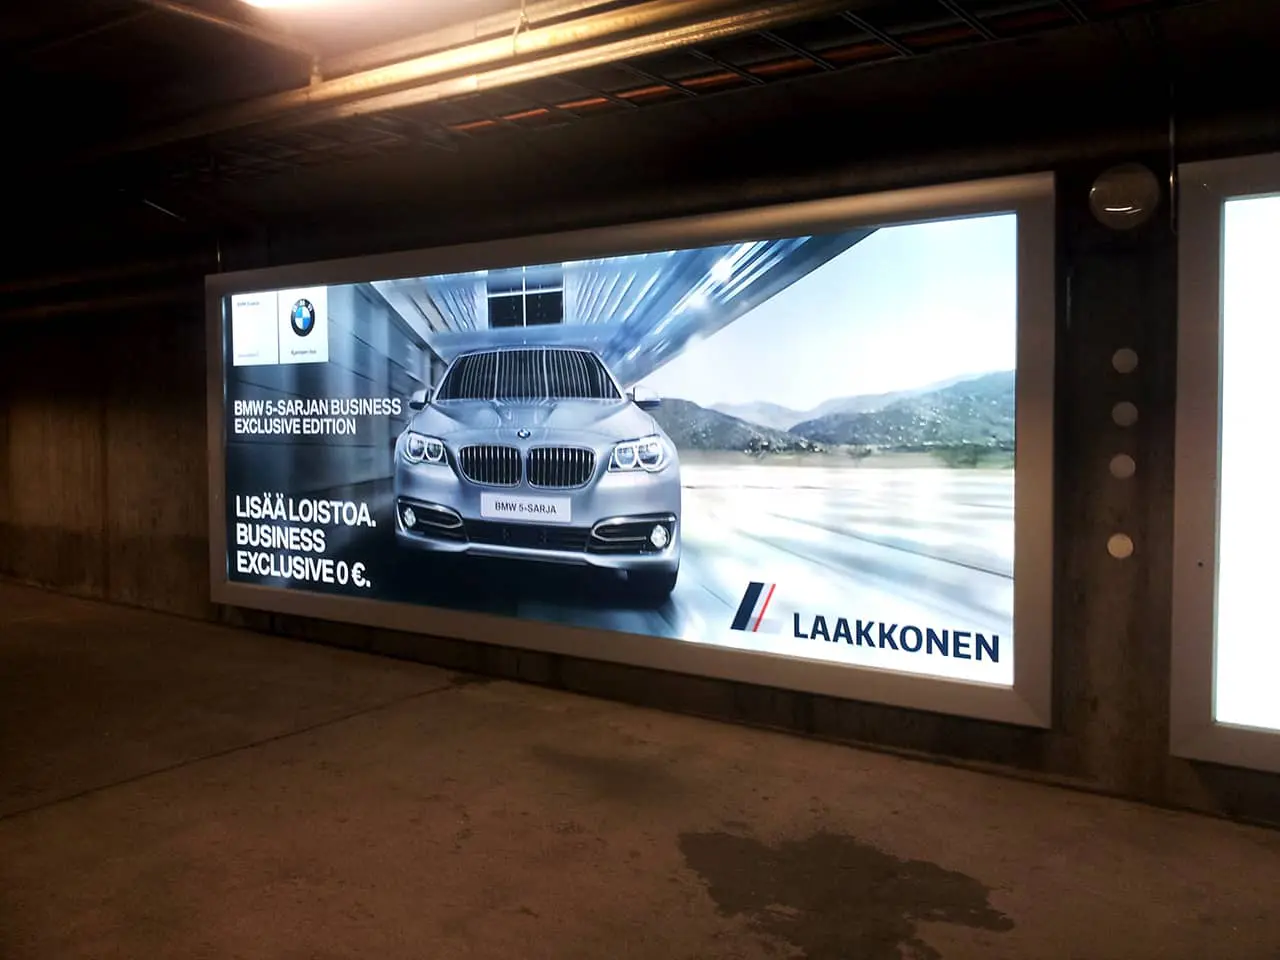 Wisząca reklama, tablica reklamowa, billboard z opatentowanym systemem szybkiej wymiany banerów bannergear™ 2.0 model Wall Slim